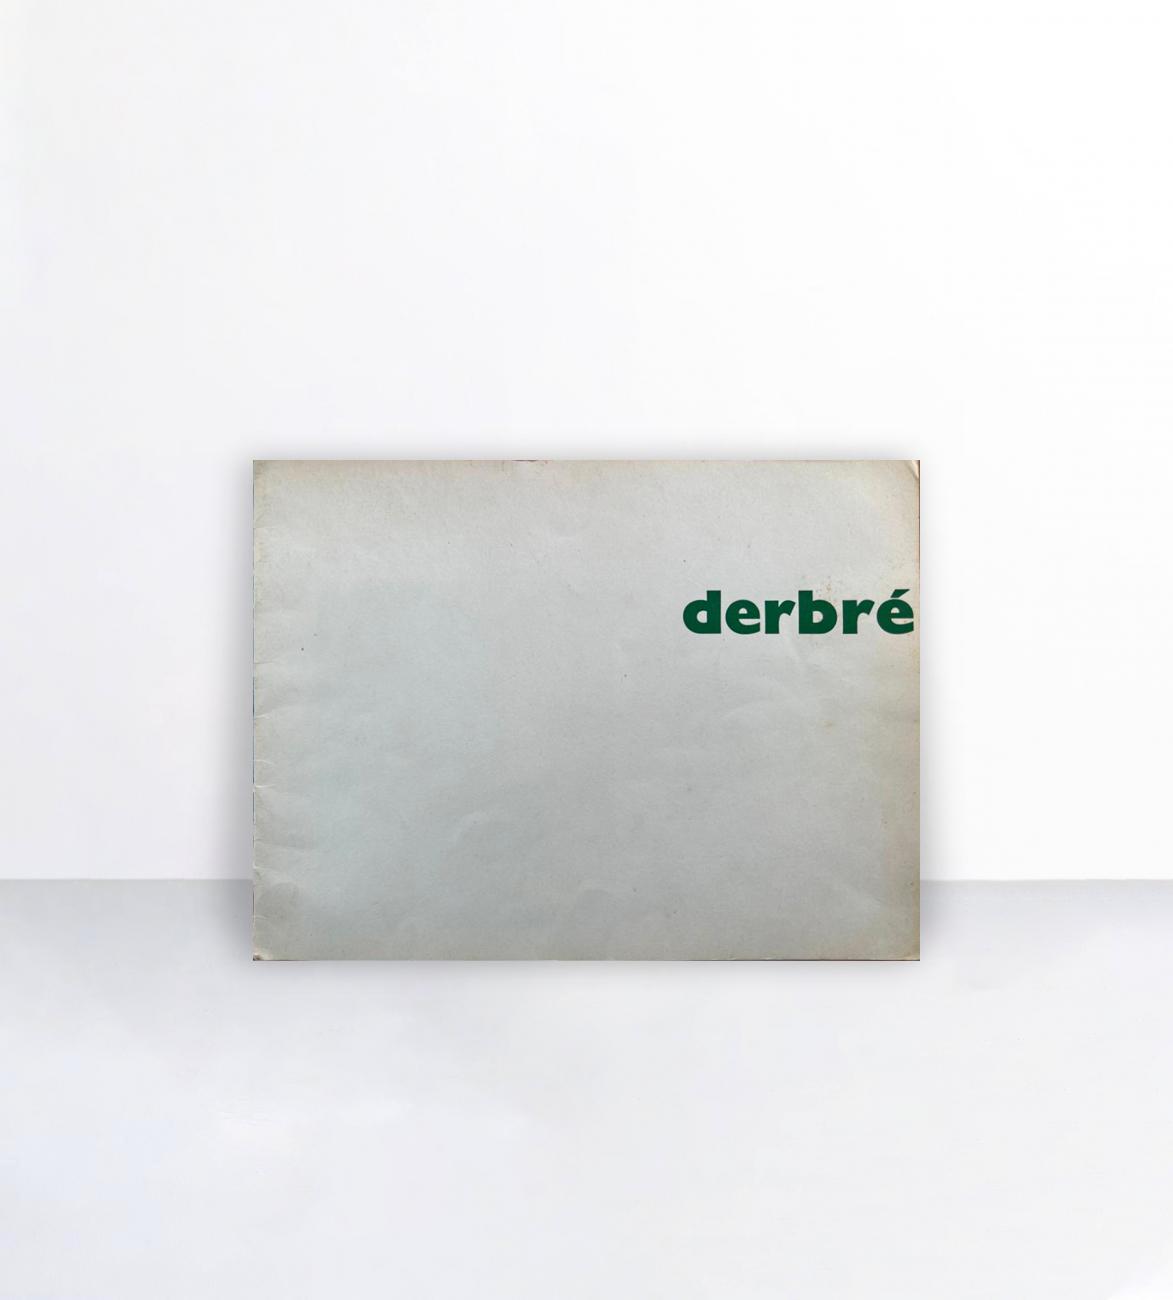 Derbré, Galerie Hervé 1965